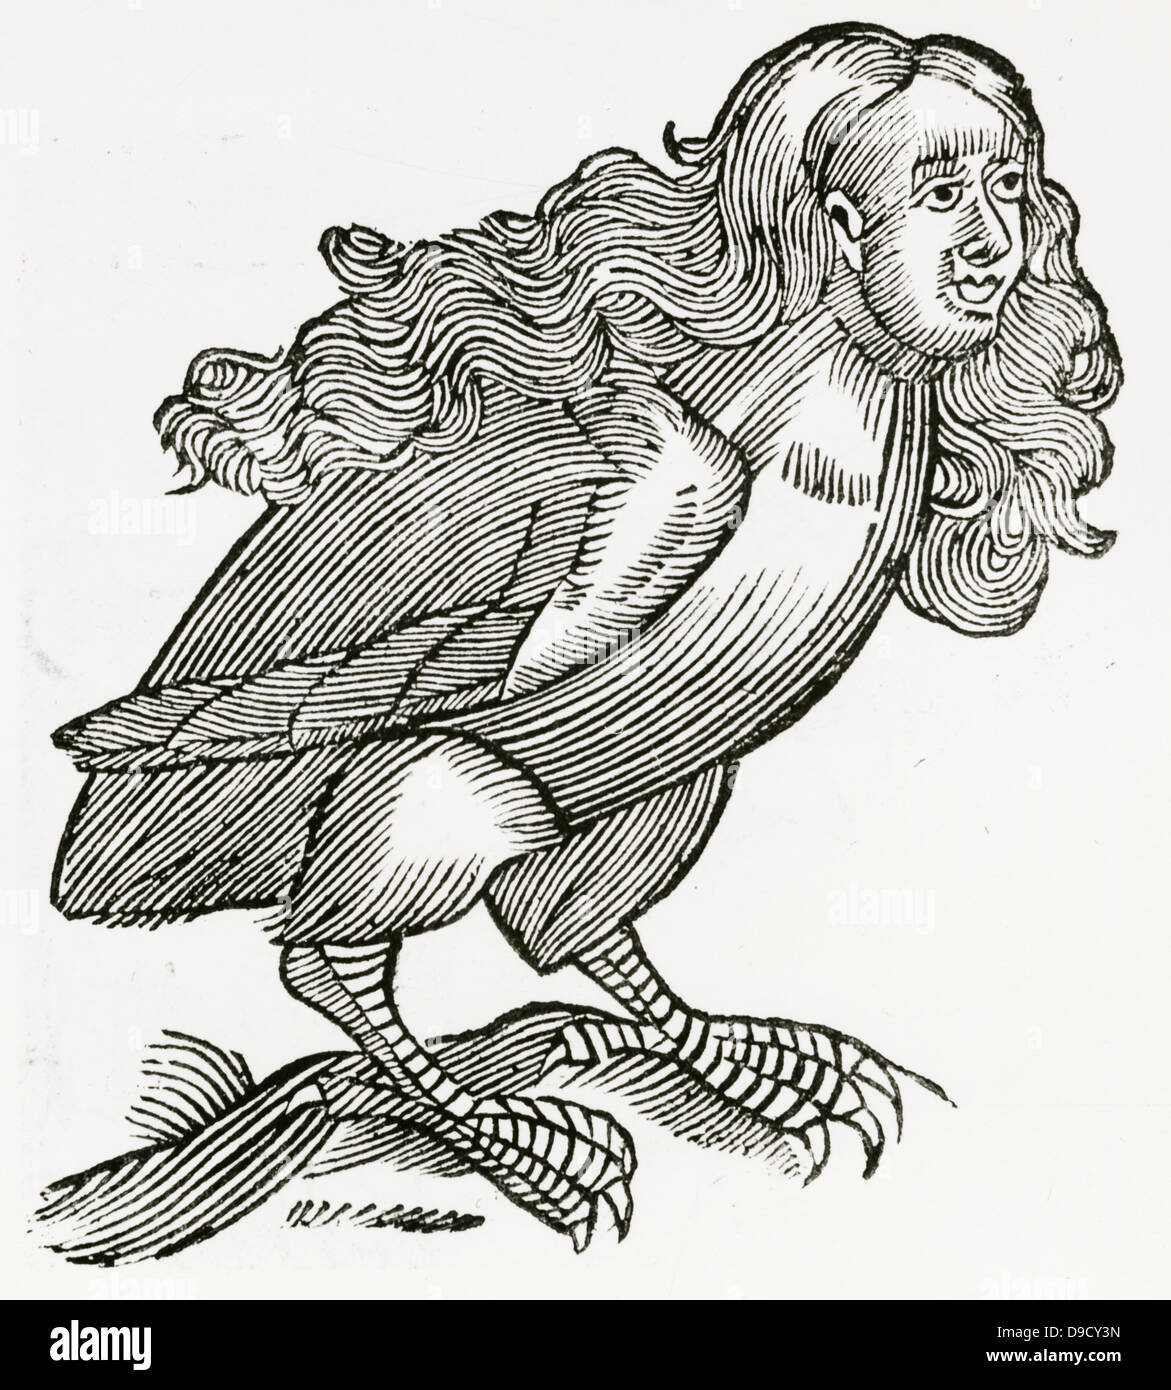 Dans la mythologie grecque une harpie était un monstre puant crasseux, avec une tête de femme et à corps d'oiseaux, de contaminer tout ce qu'il s'approcha. Gravure sur bois à partir d'une édition 1669 de l'Historiae animalium par Conrad Gesner. Banque D'Images